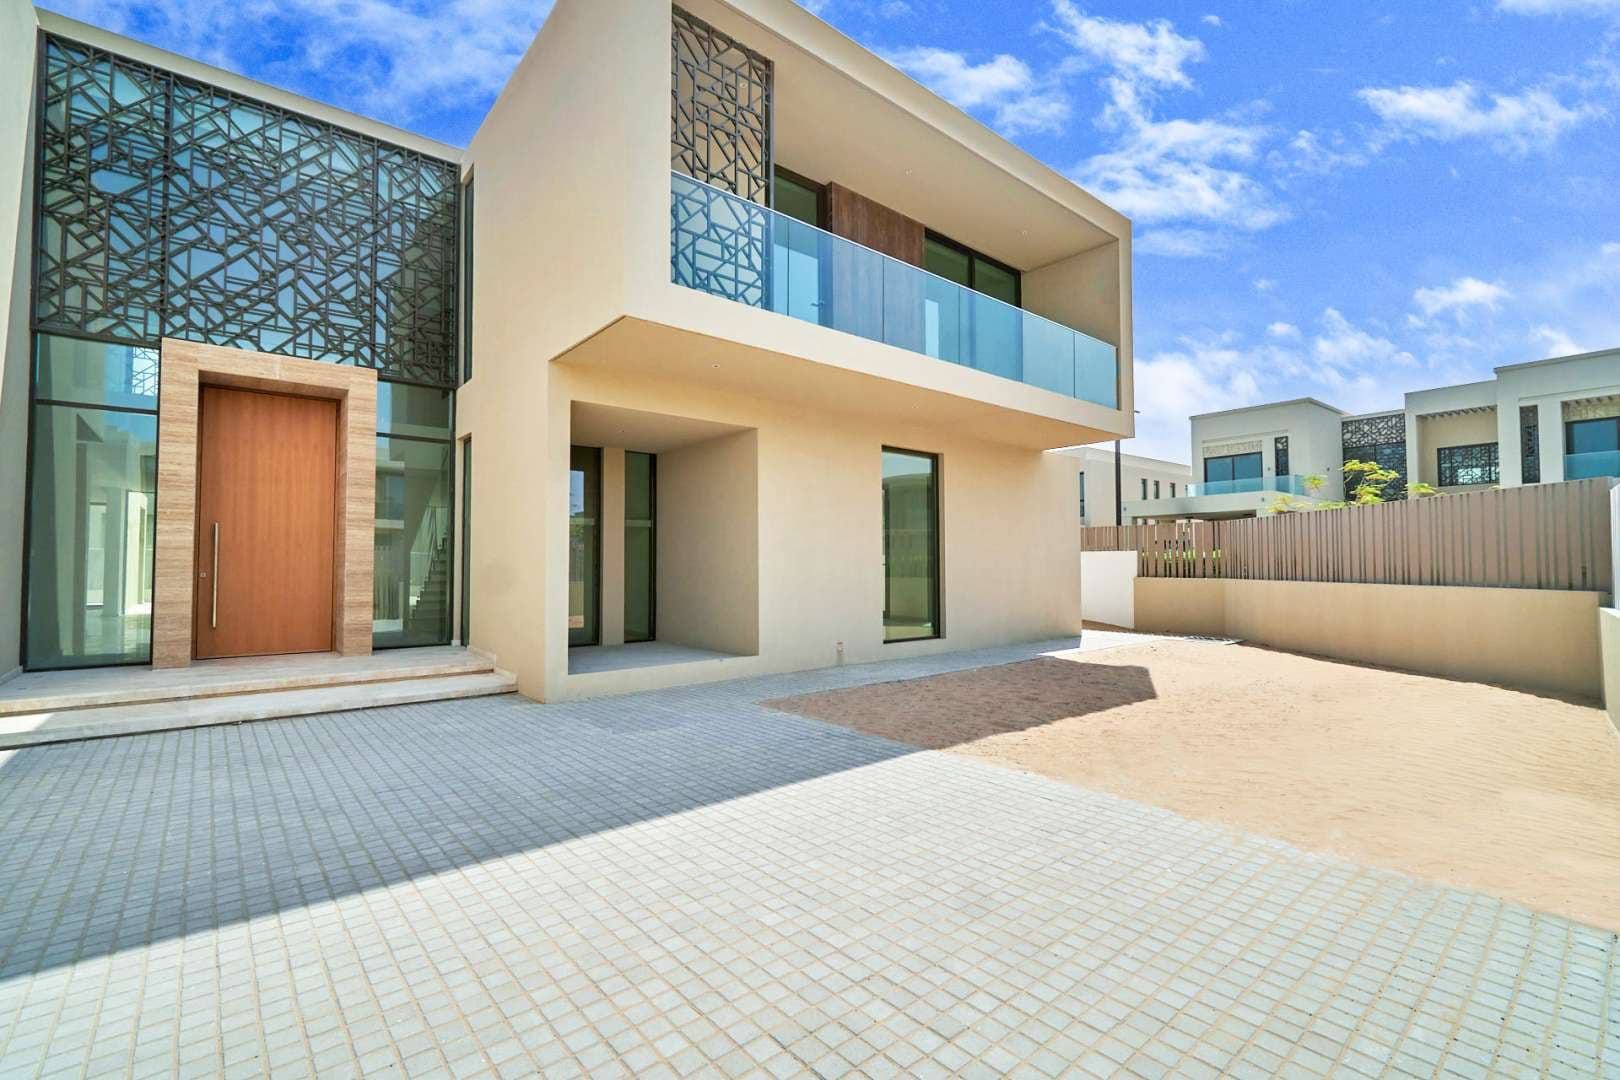 7 Bedroom Villa For Sale Dubai Hills Vista Lp08809 2e2060600b50ec00.jpg